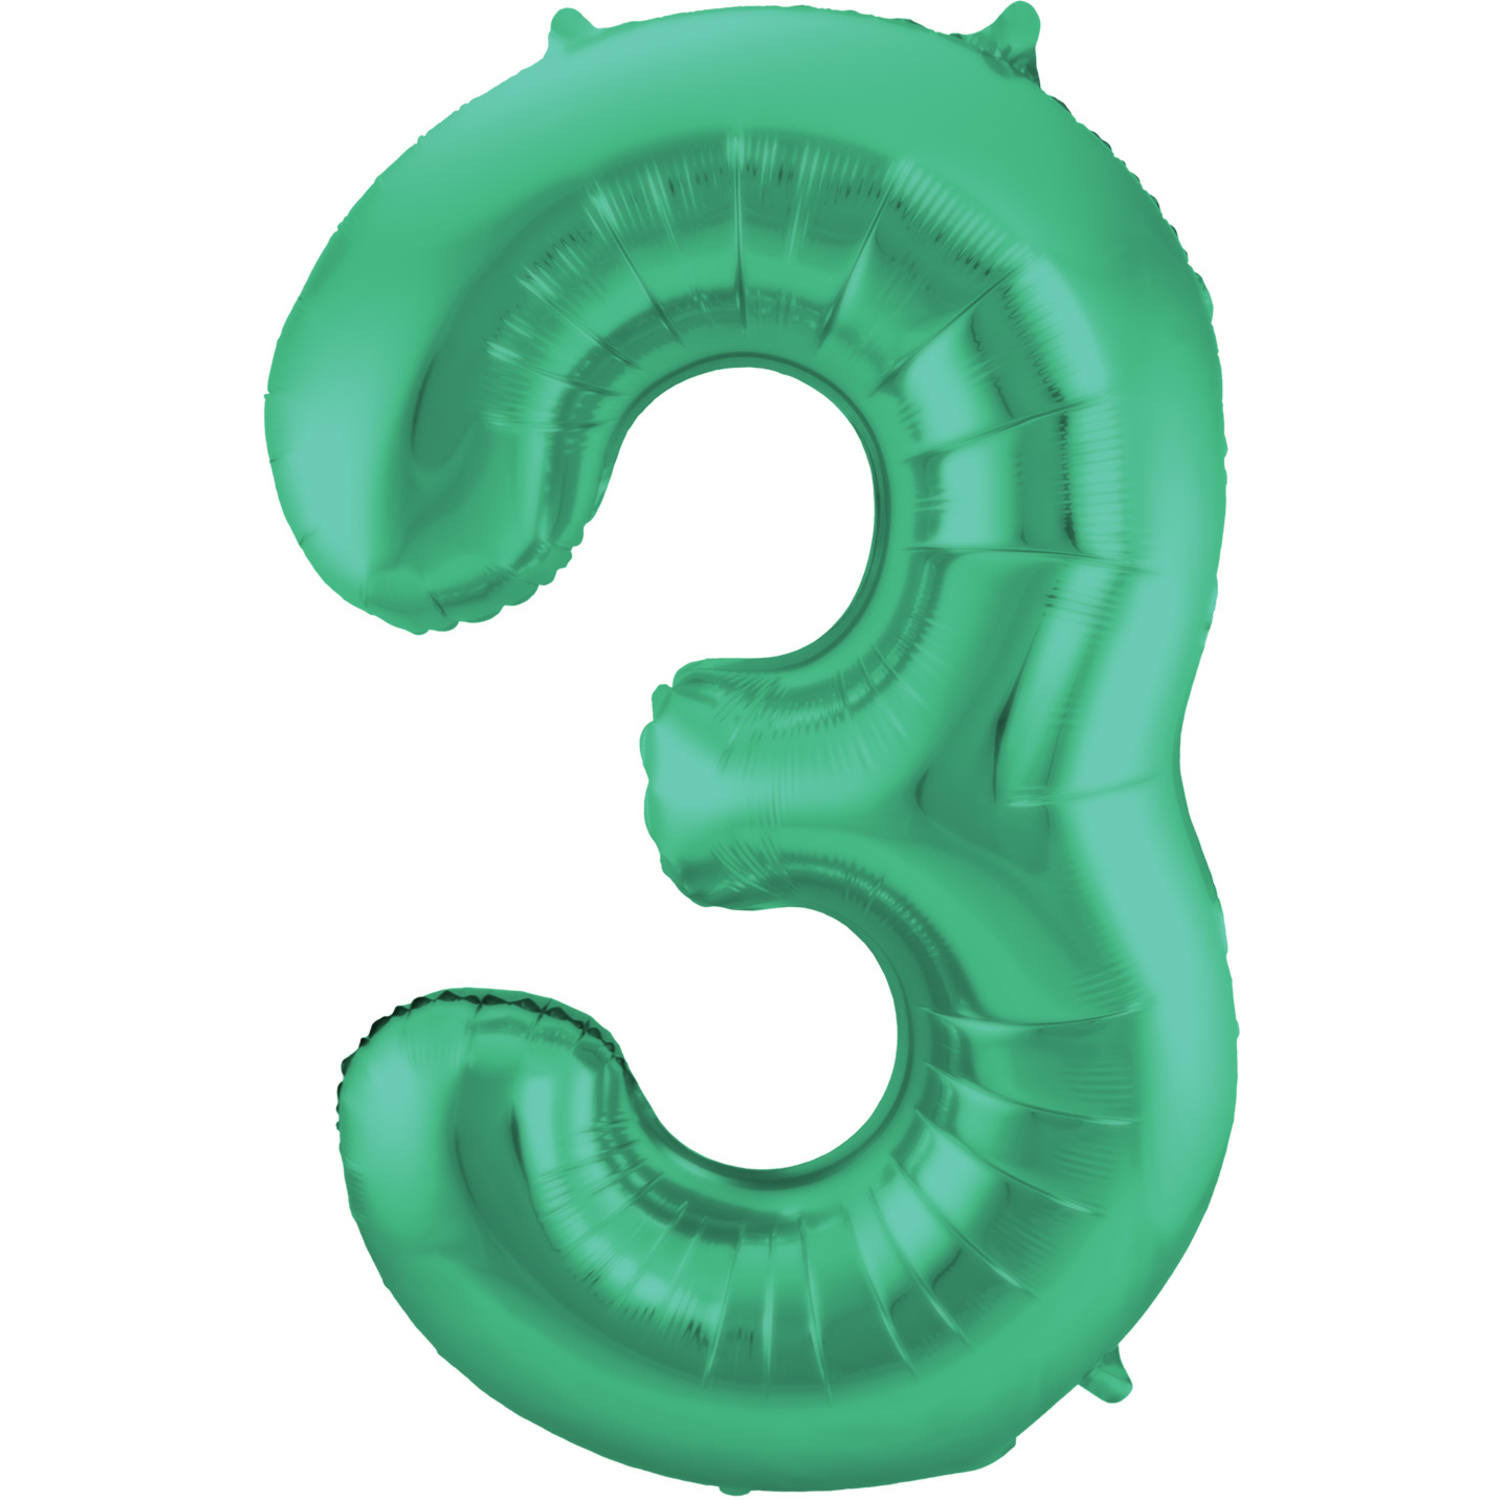 Folie ballon van cijfer 3 in het groen 86 cm